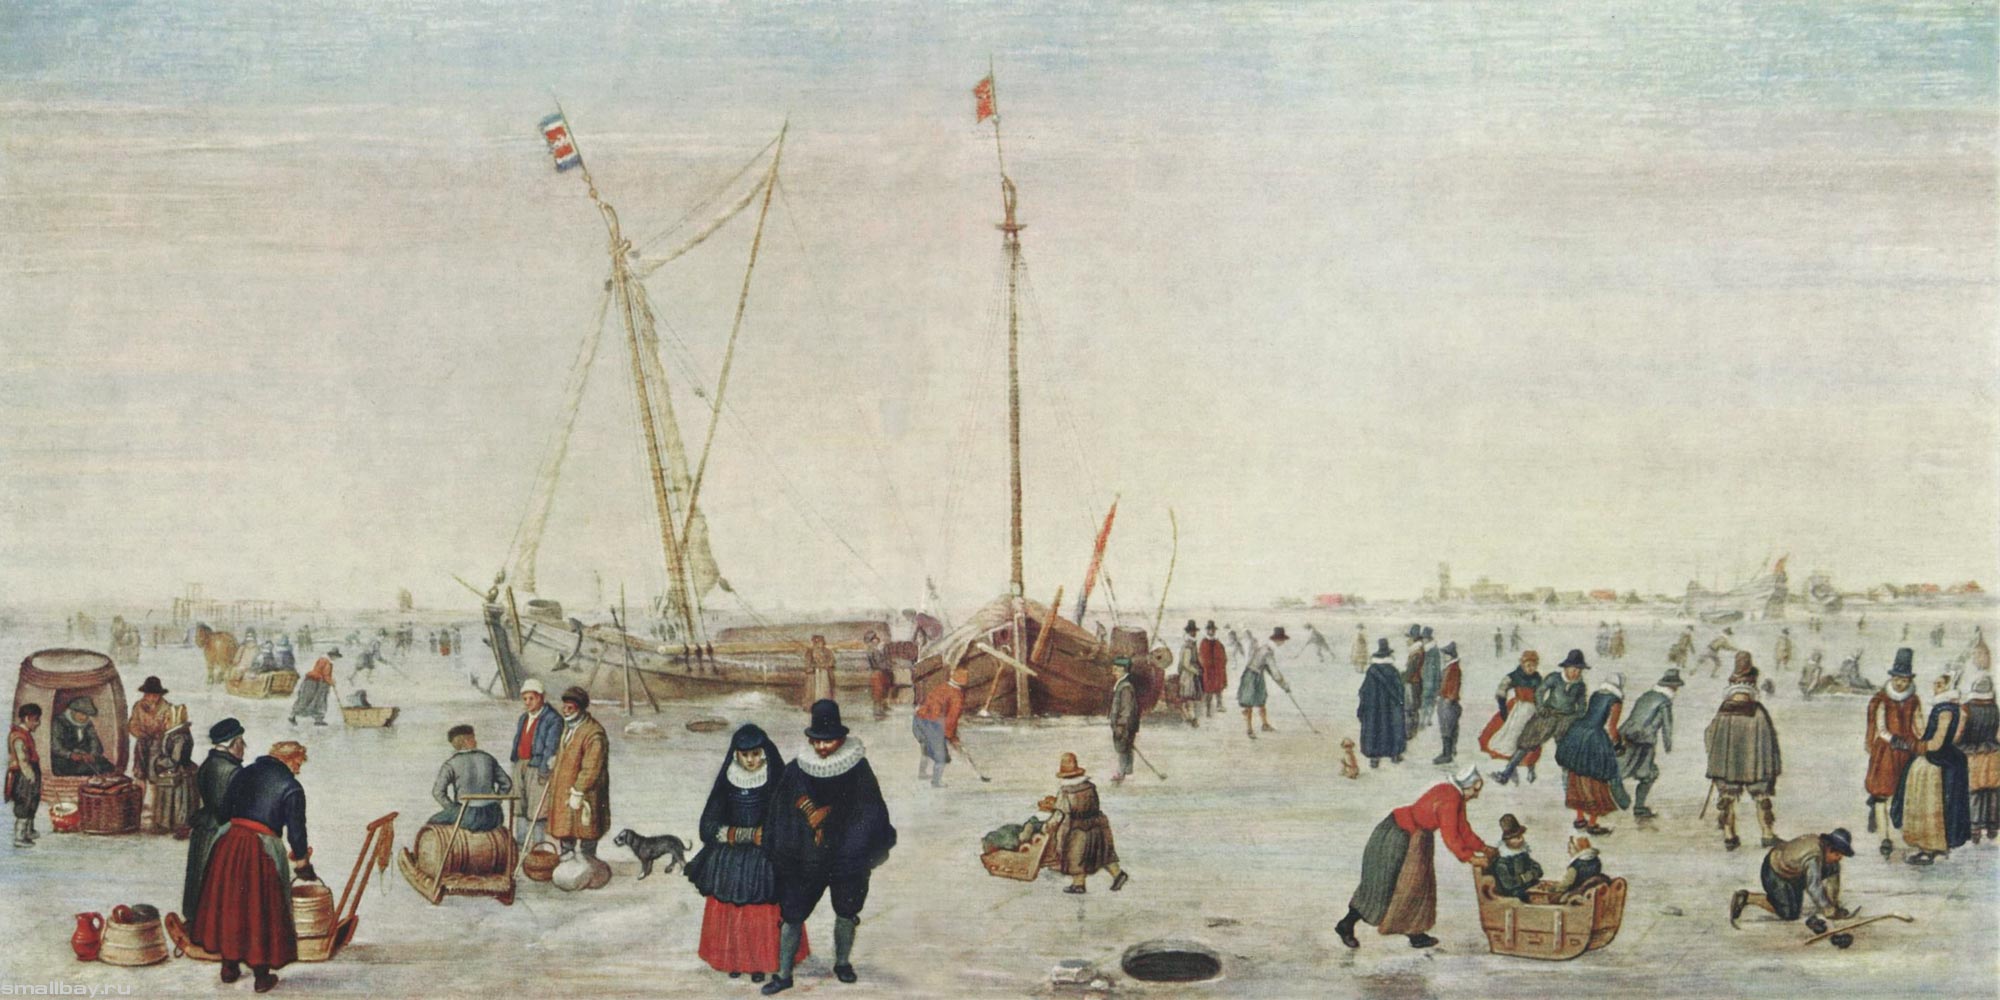 Хендрик ван Аверкамп. "Зимний пейзаж с конькобежцами". 1610-1620.